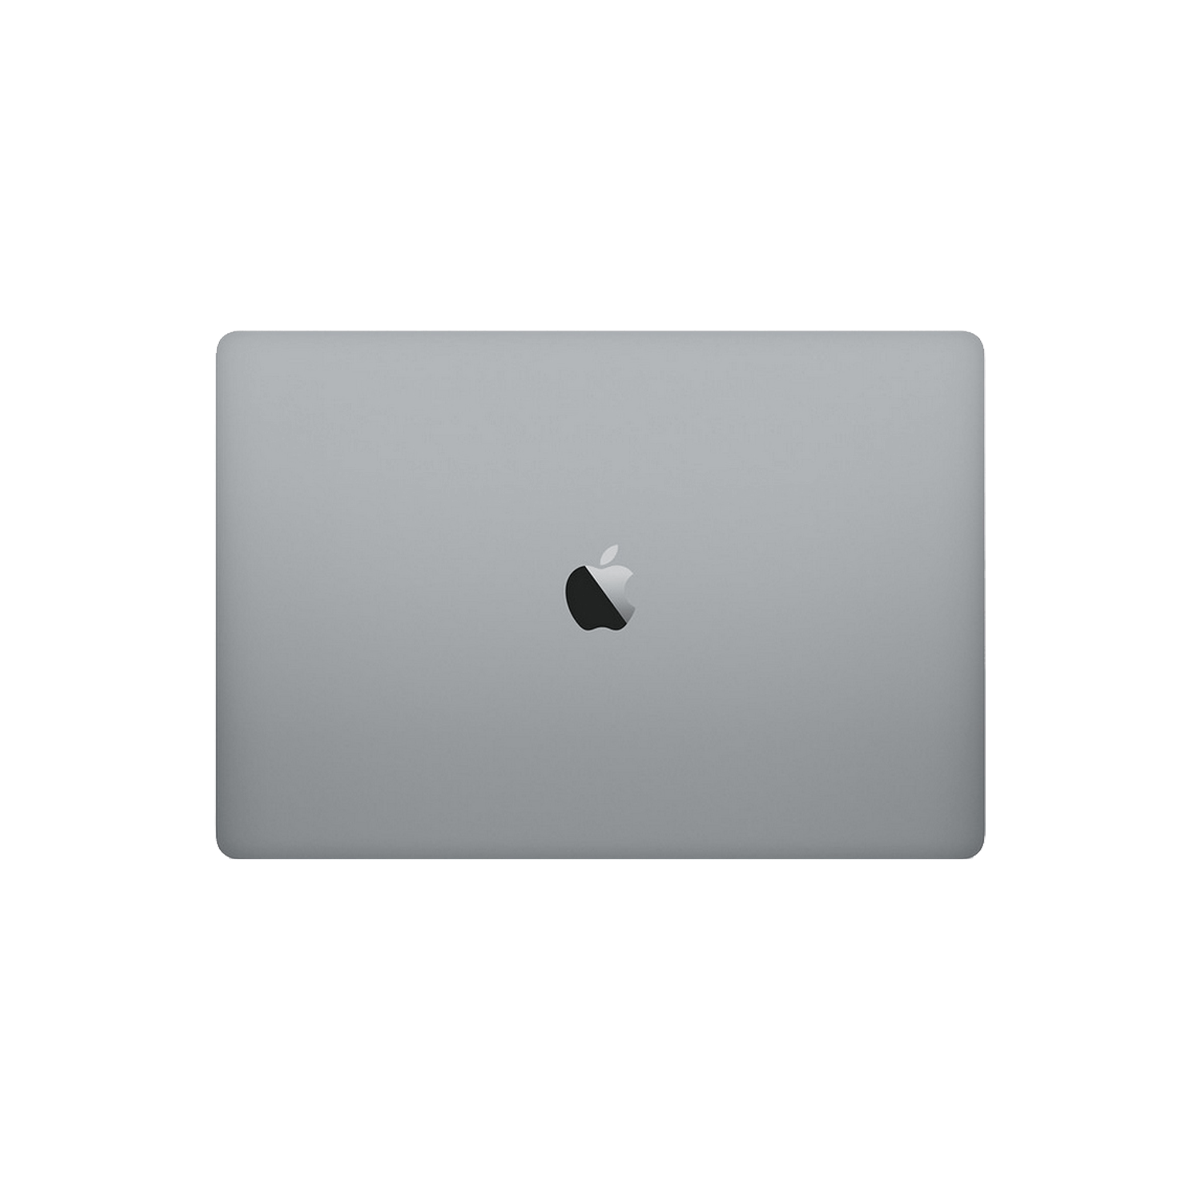 Refurbished MacBook Pro Touchbar 13" i7 3.3 Ghz 16GB 256GB Spacegrijs - test-product-media-liquid1